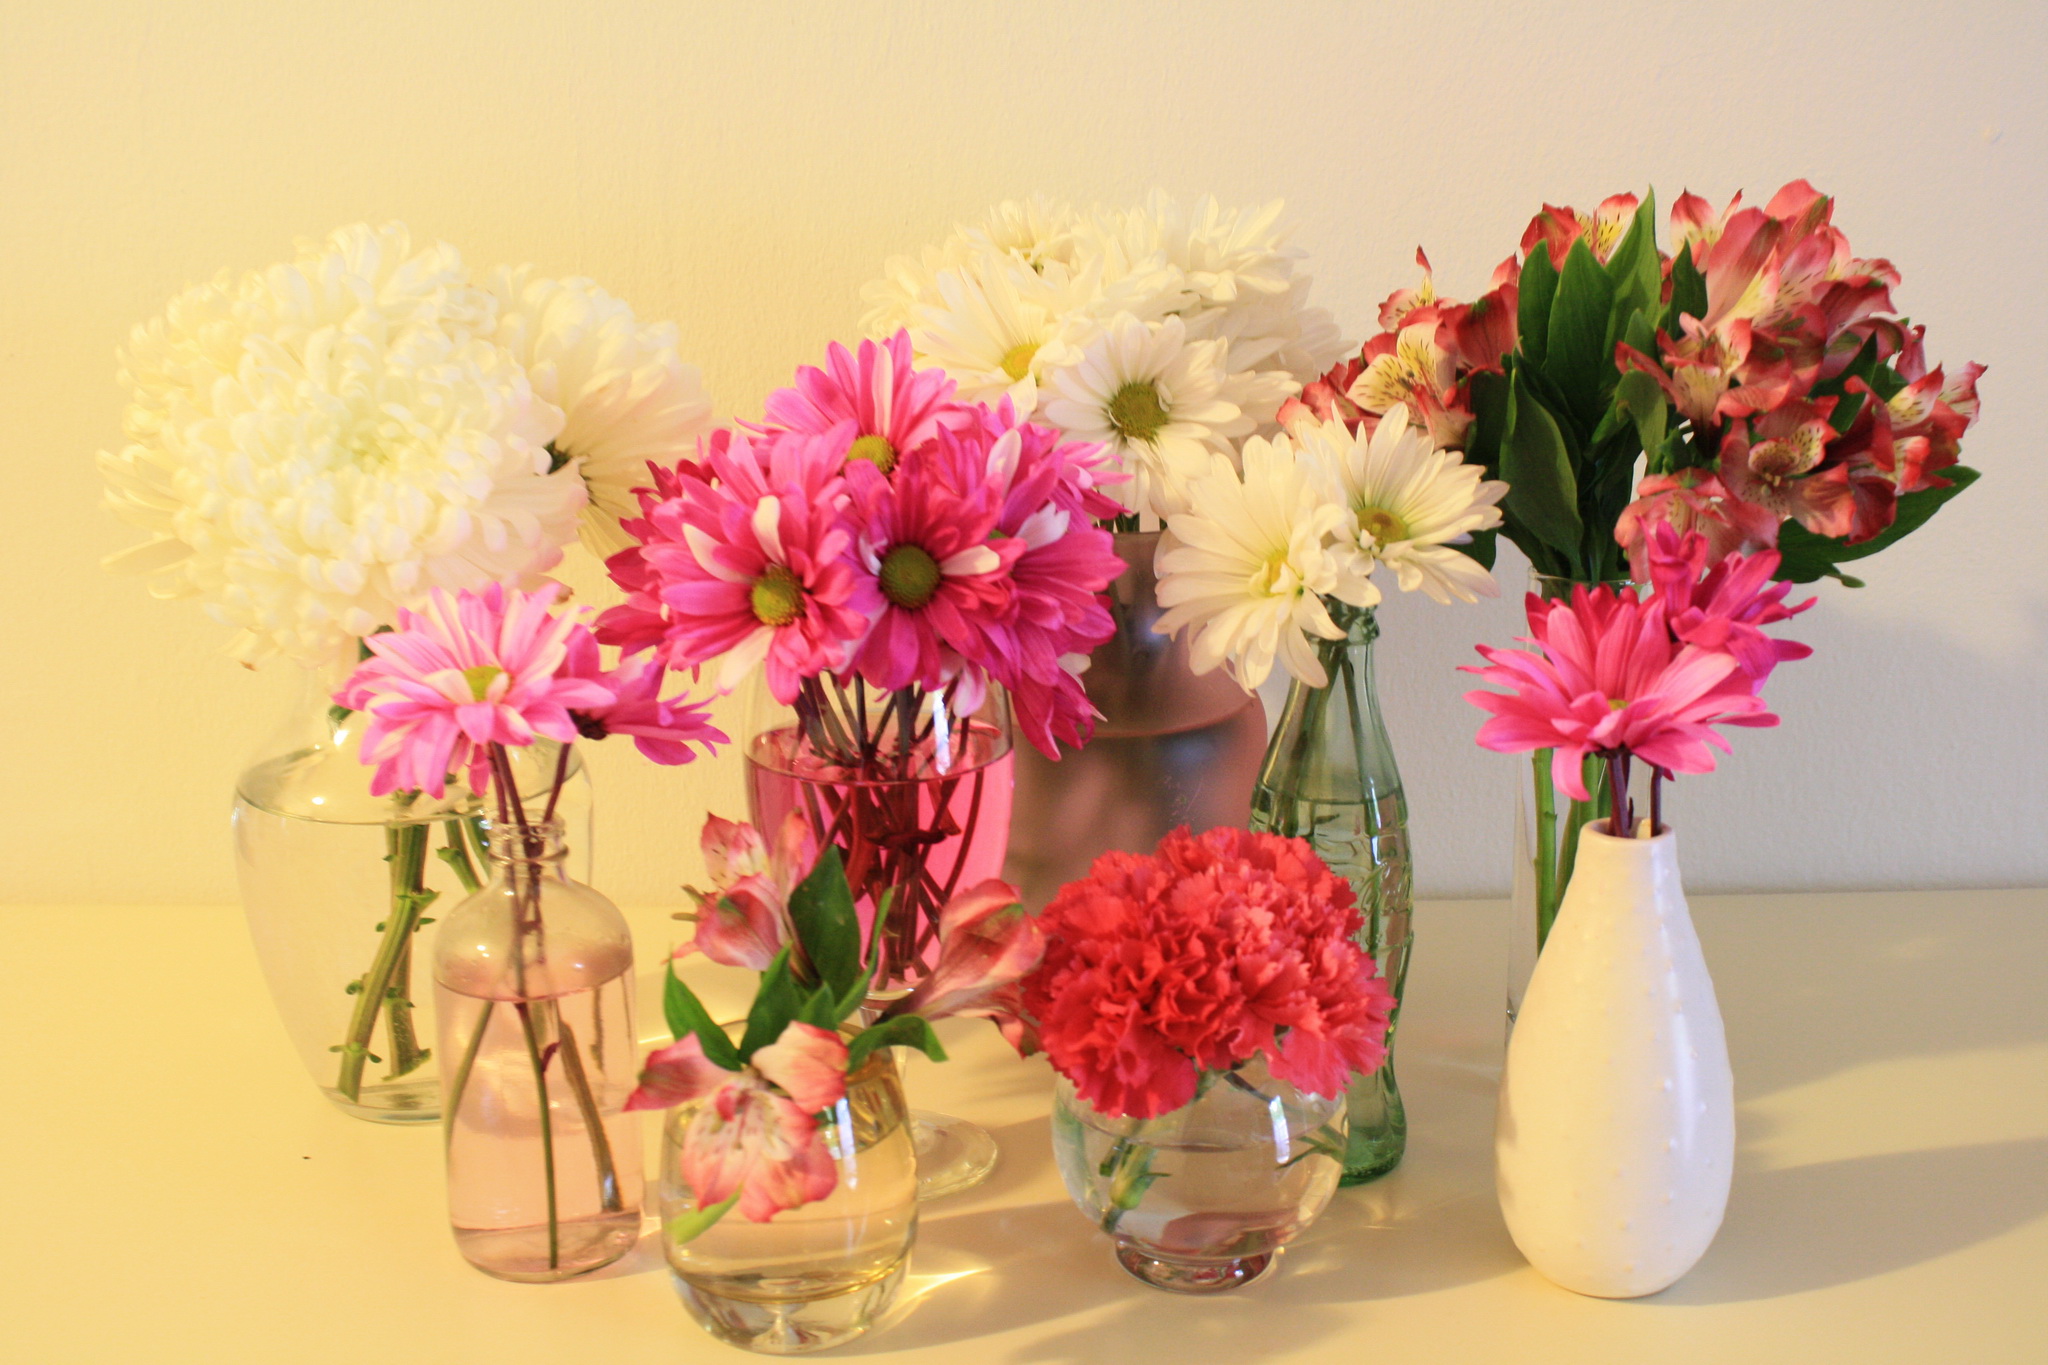 Картинка с цветами на столе. Цветы в вазе. Шикарные цветы в вазе. Ваза с цветком. Яркие цветы в вазе.